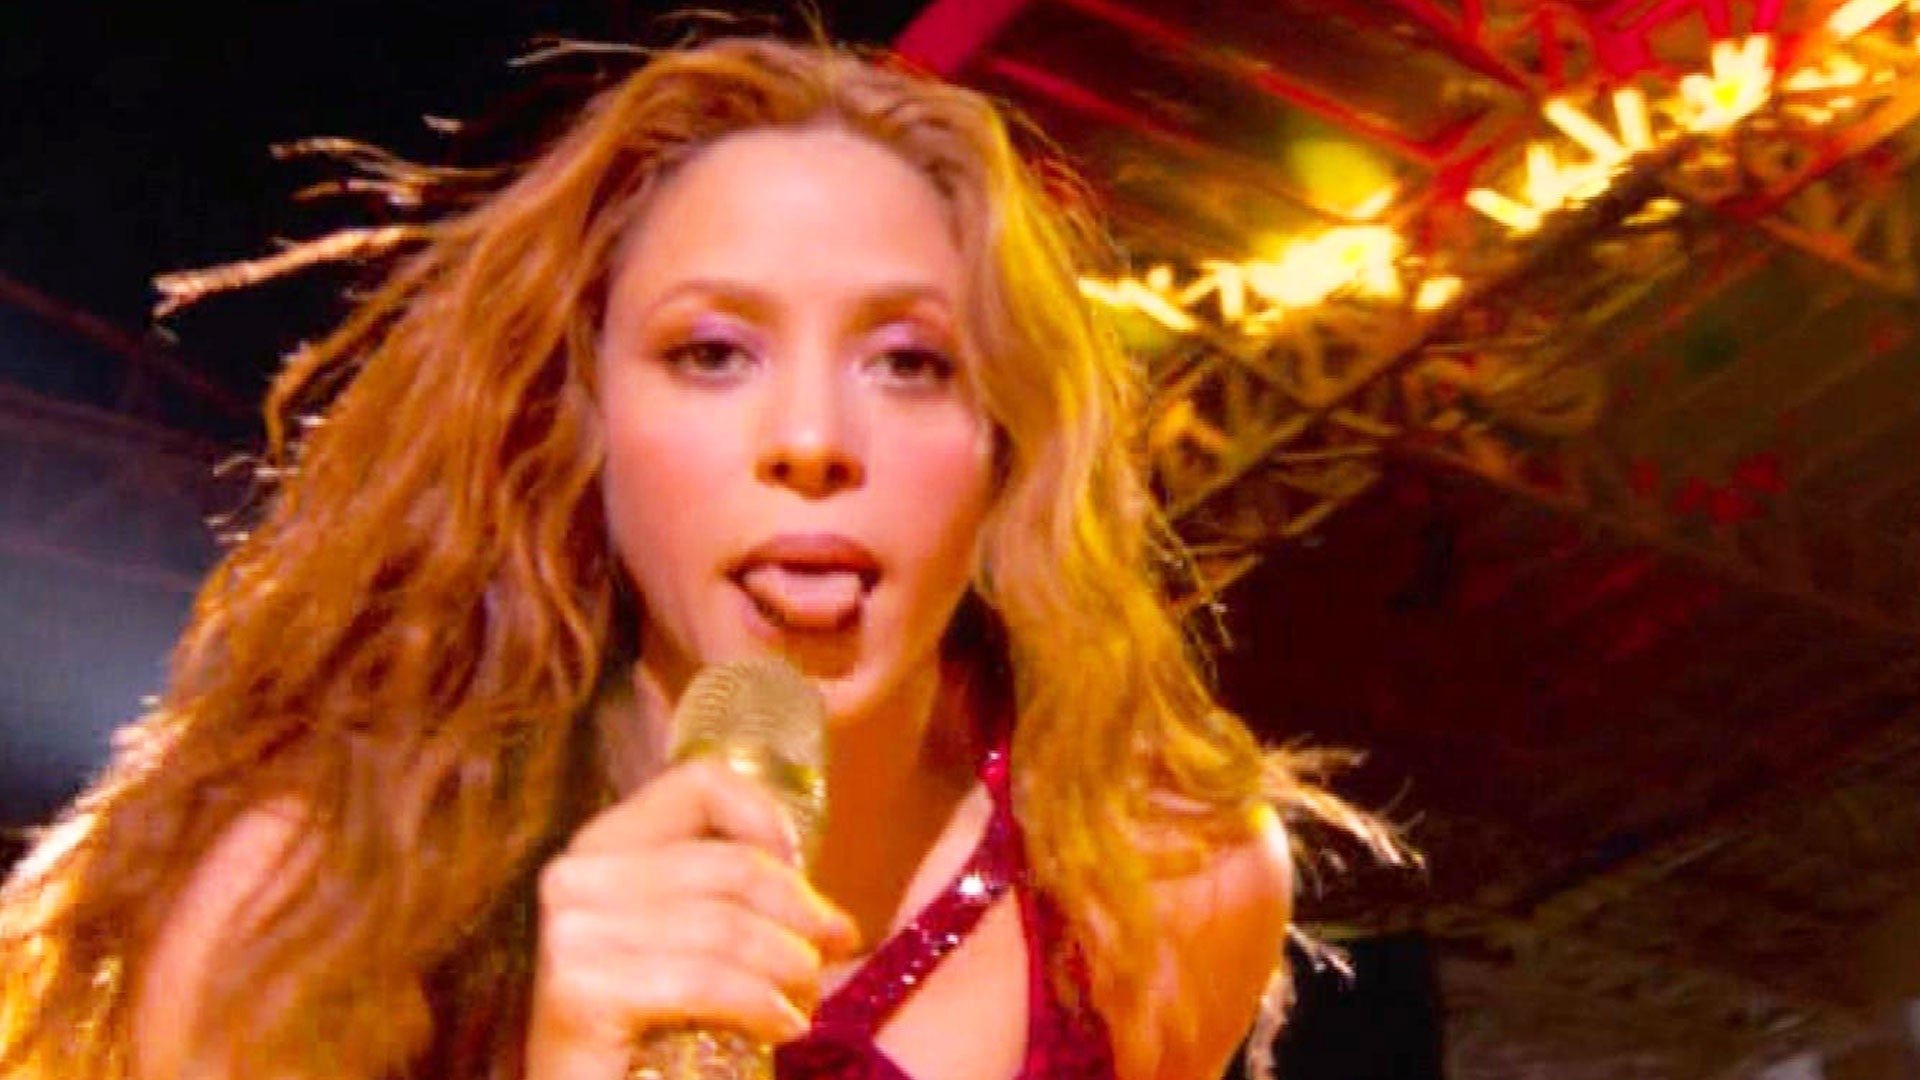 eto a05 shakira demi 020320.jpg?resize=1200,630 - La langue de Shakira a beaucoup marqué les esprits durant le Superbowl, mais c'est en fait une référence à ses racines culturelles